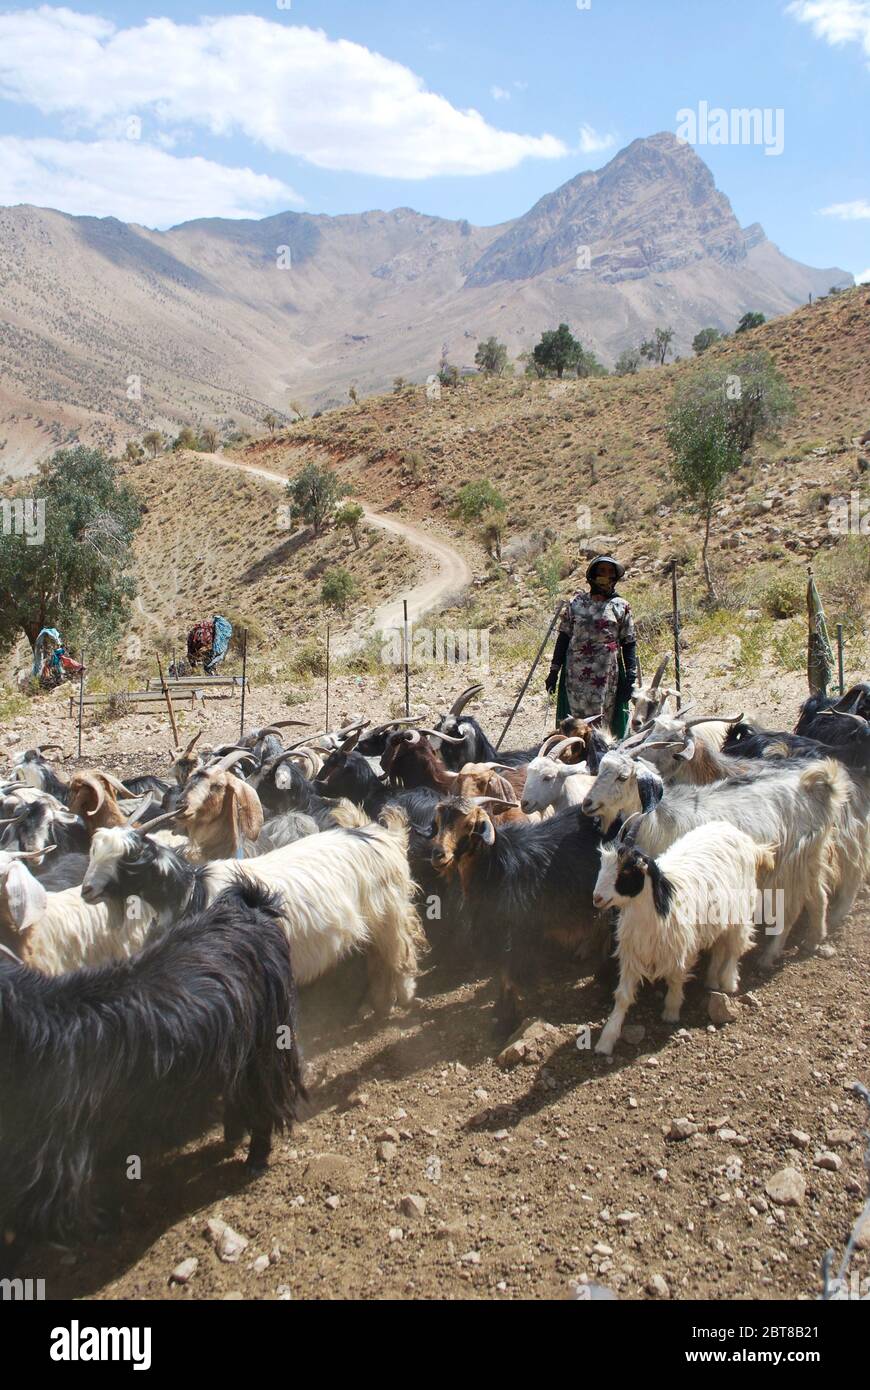 goats, Zagros mountains, Iran Stock Photo